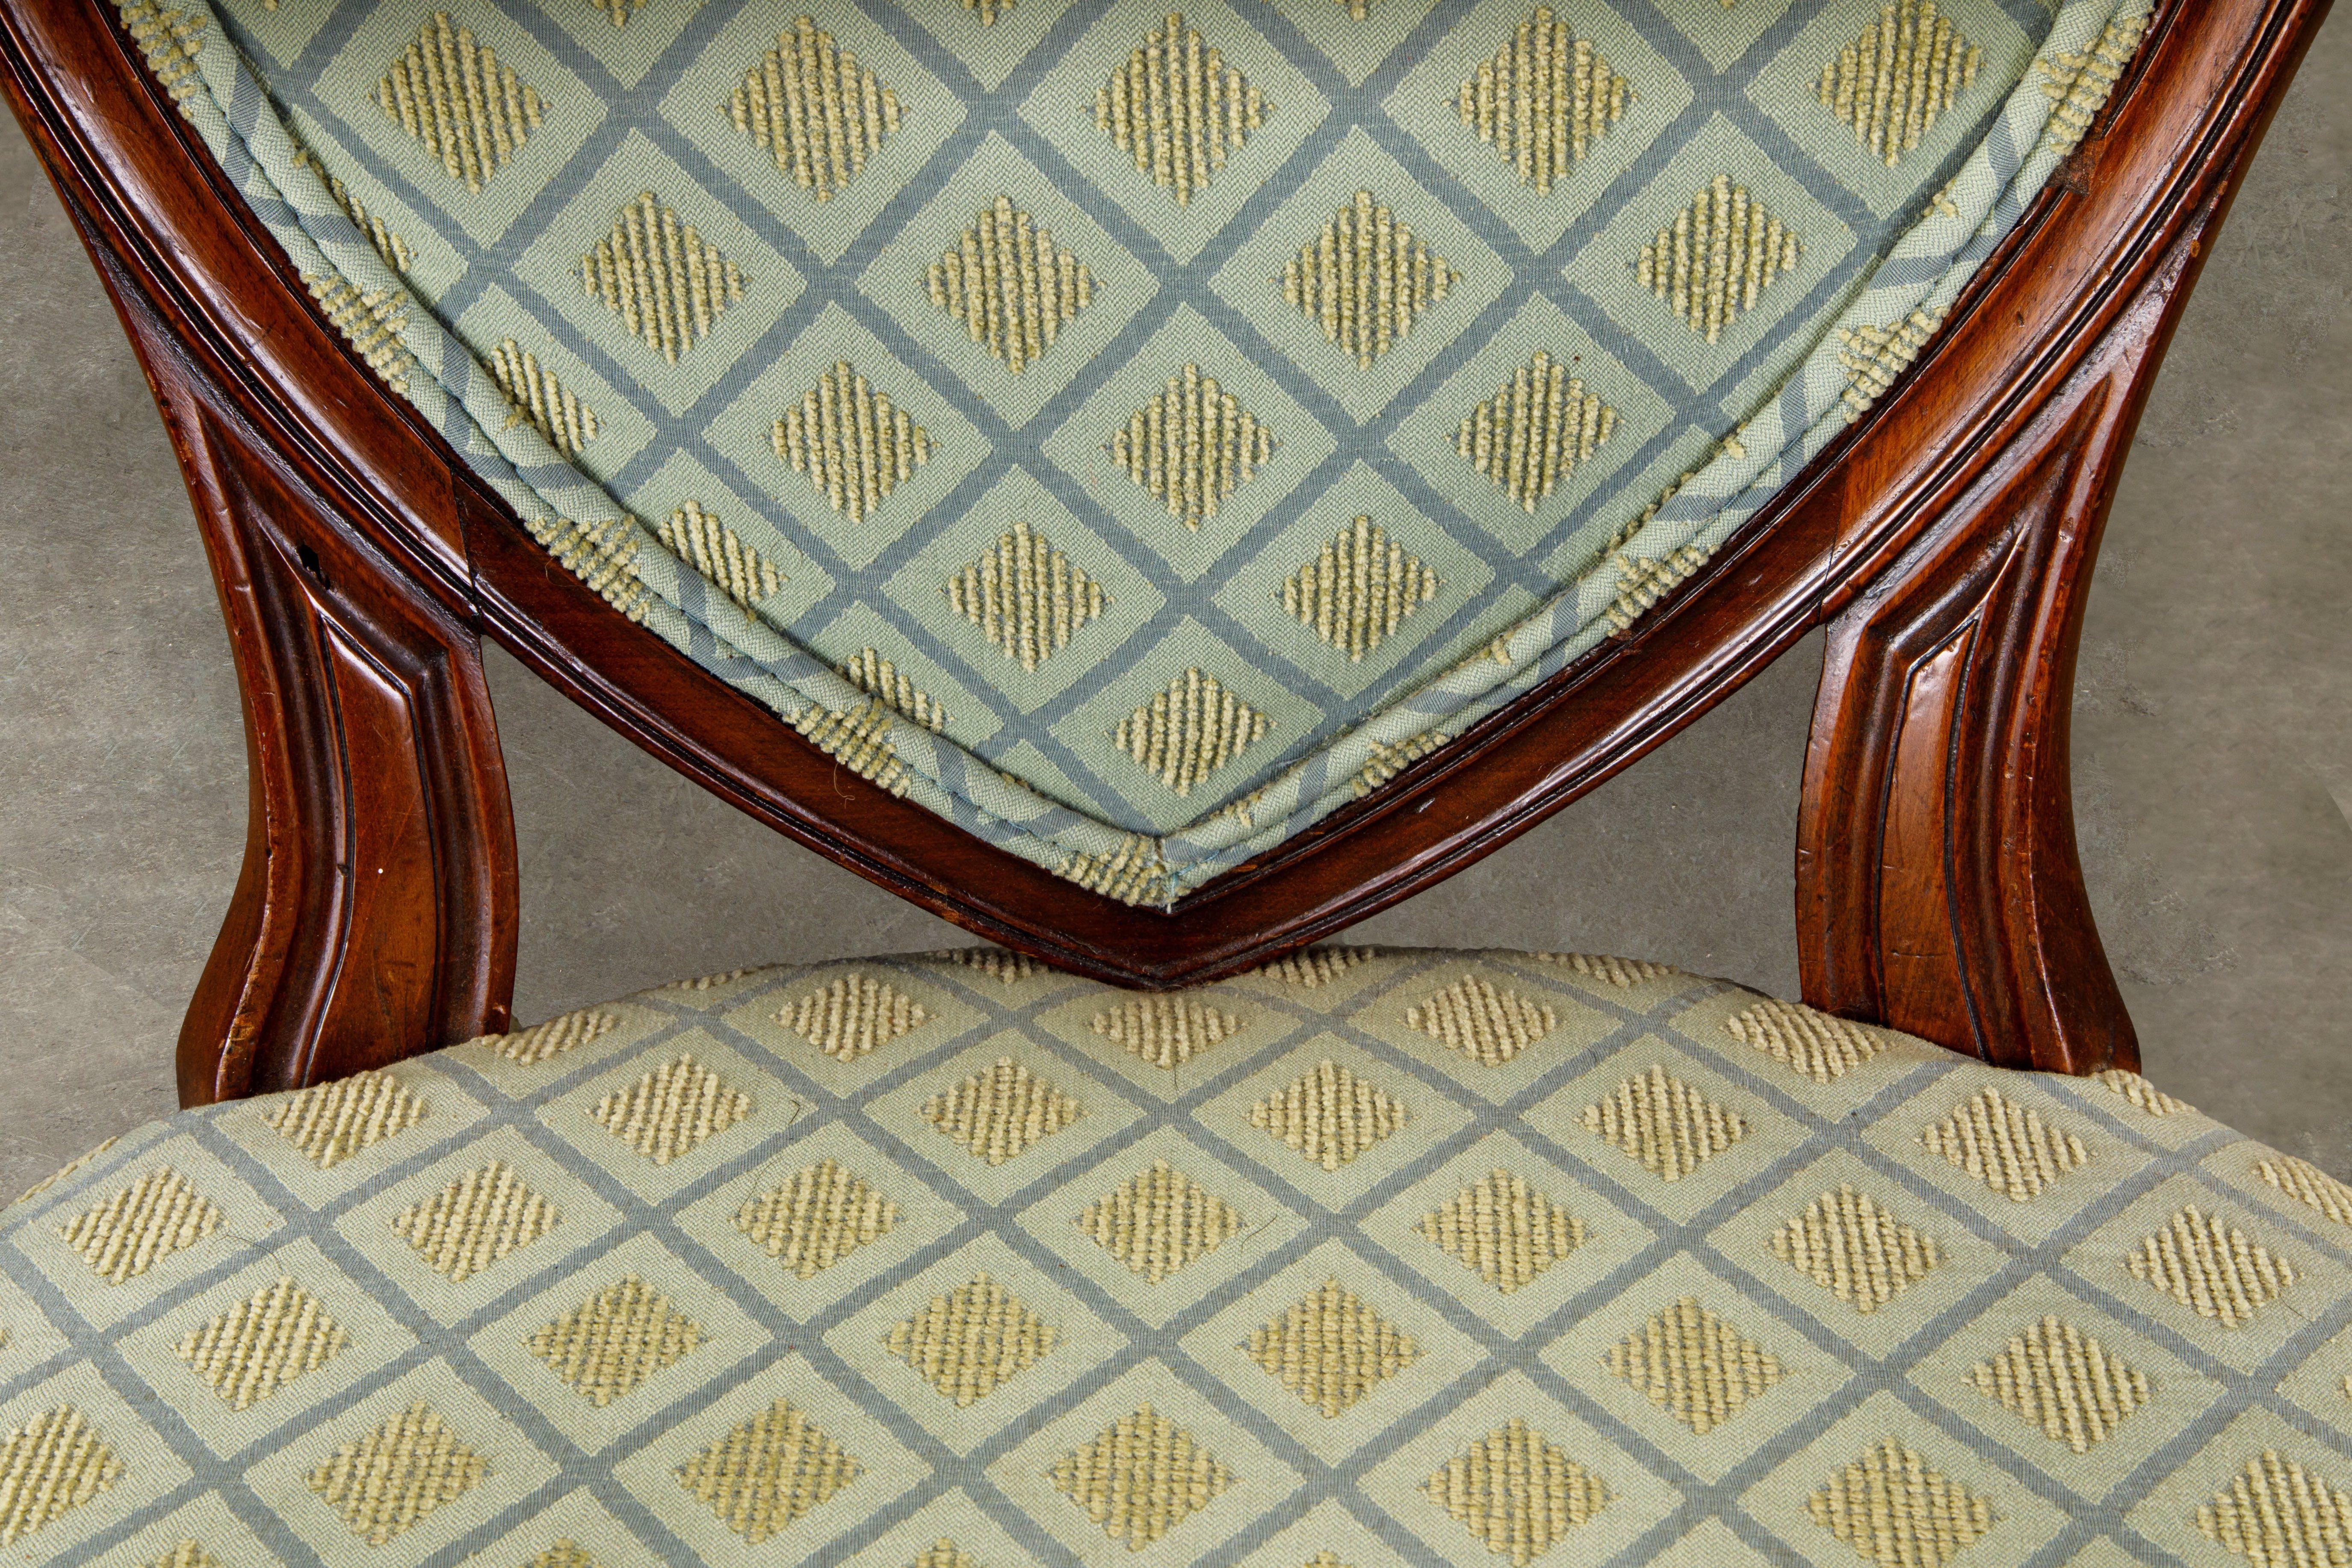 Fin du XIXe siècle Paire de fauteuils Hepplewhite tapissés à dossier en forme de bouclier, provenance des années 1870 en vente